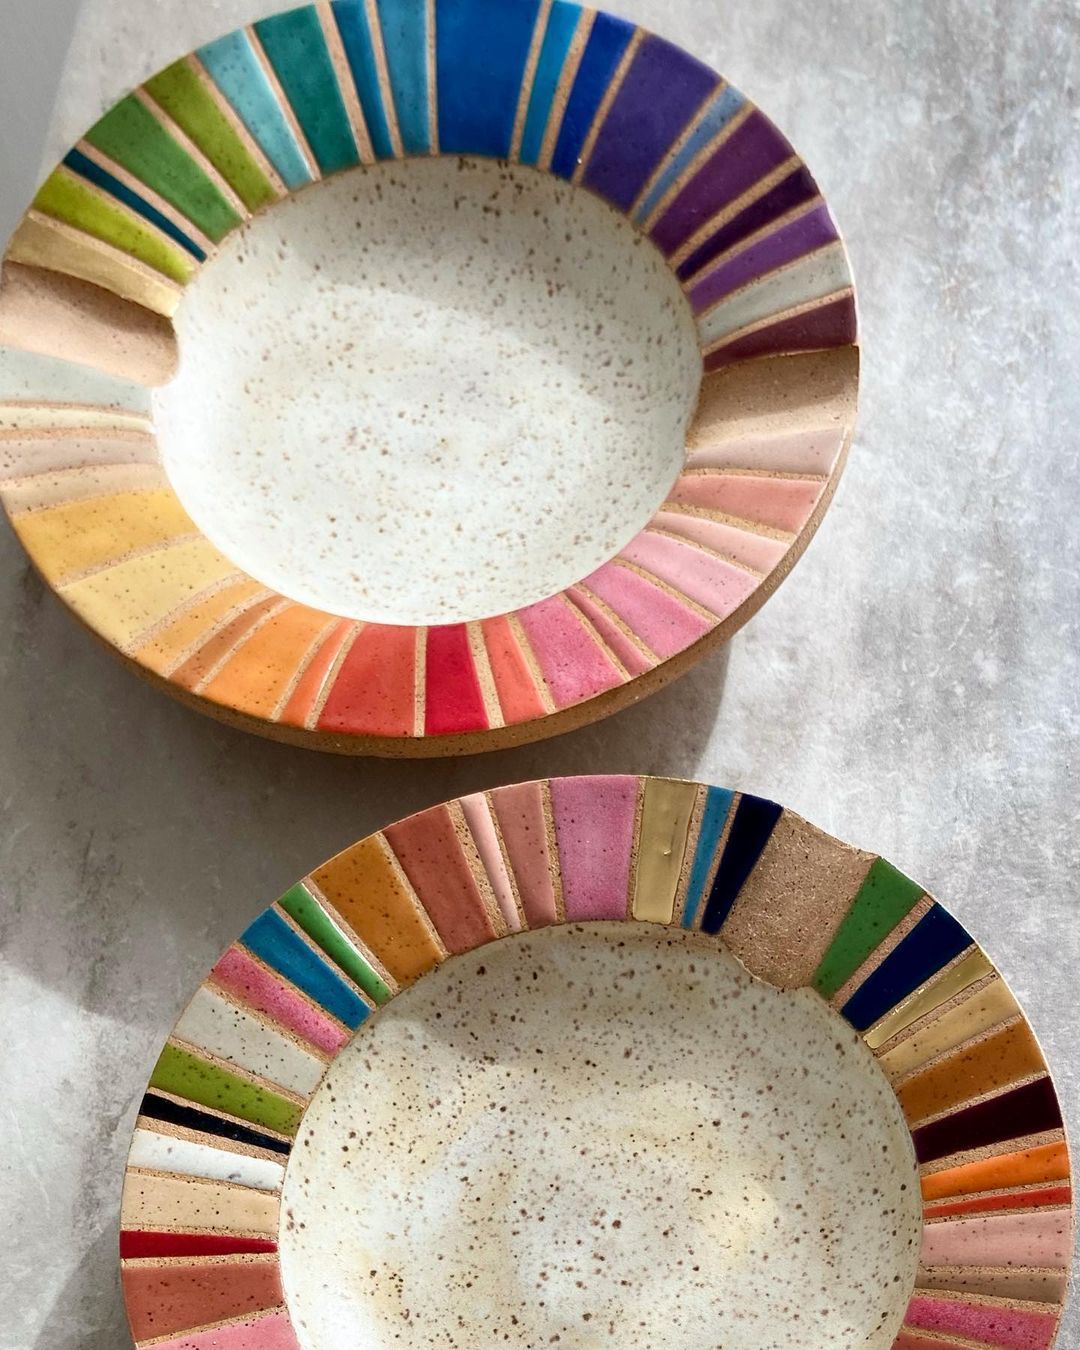 Rainbow Ceramics Gorgeous Multicolored Ceramic Pieces By Christine Tenenholtz (7)